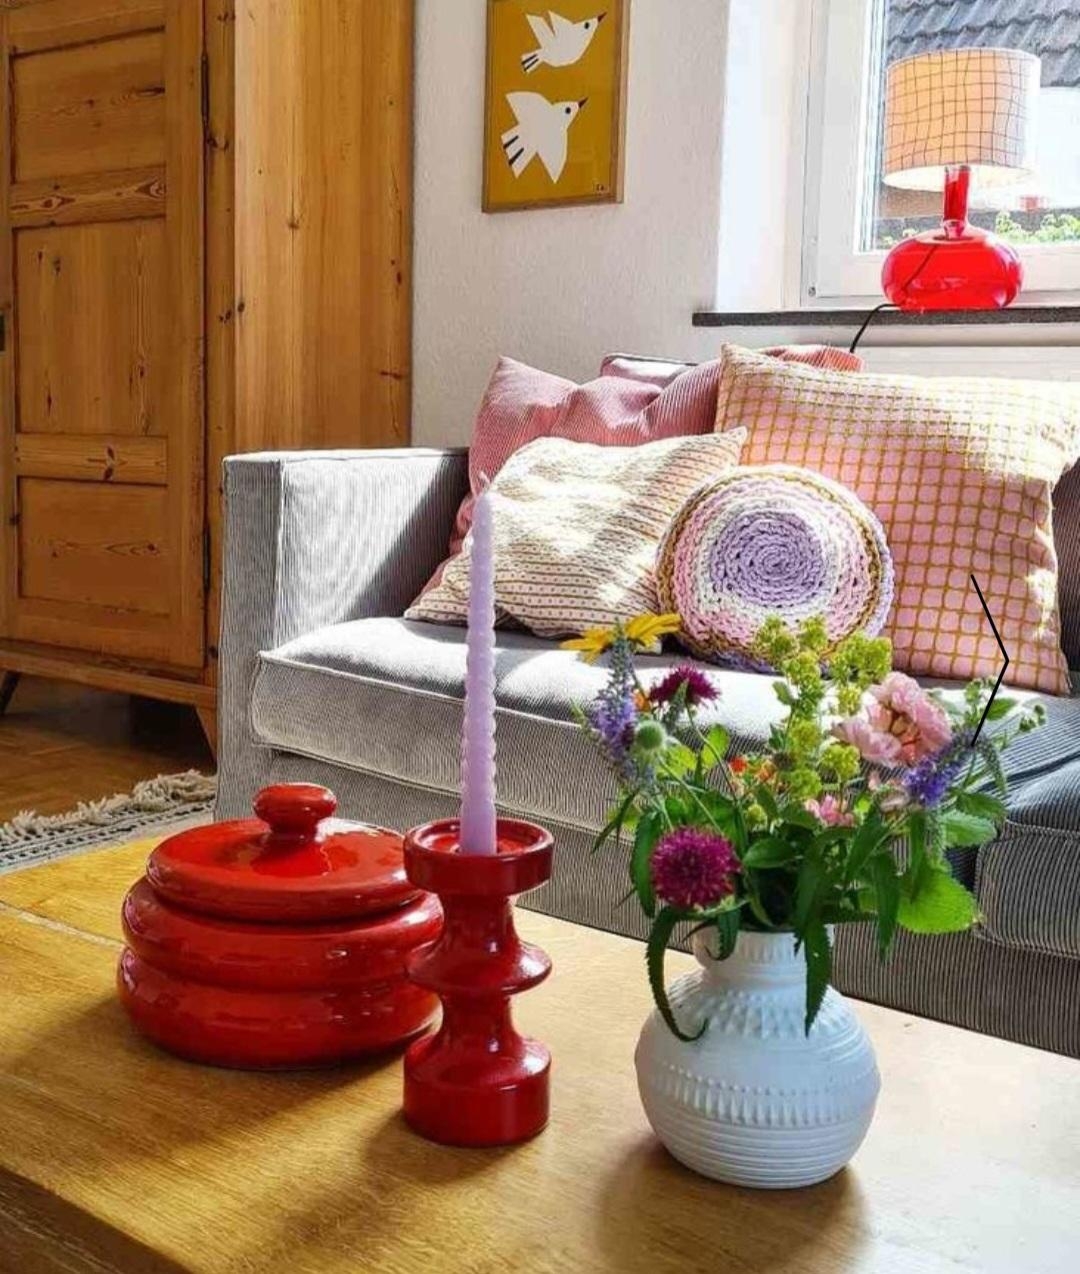 #couchstyle #Wohnzimmer #farbenfroh #vintage #diy #midcentury #cordsofa #Blumenstrauß #Kissen #sommer